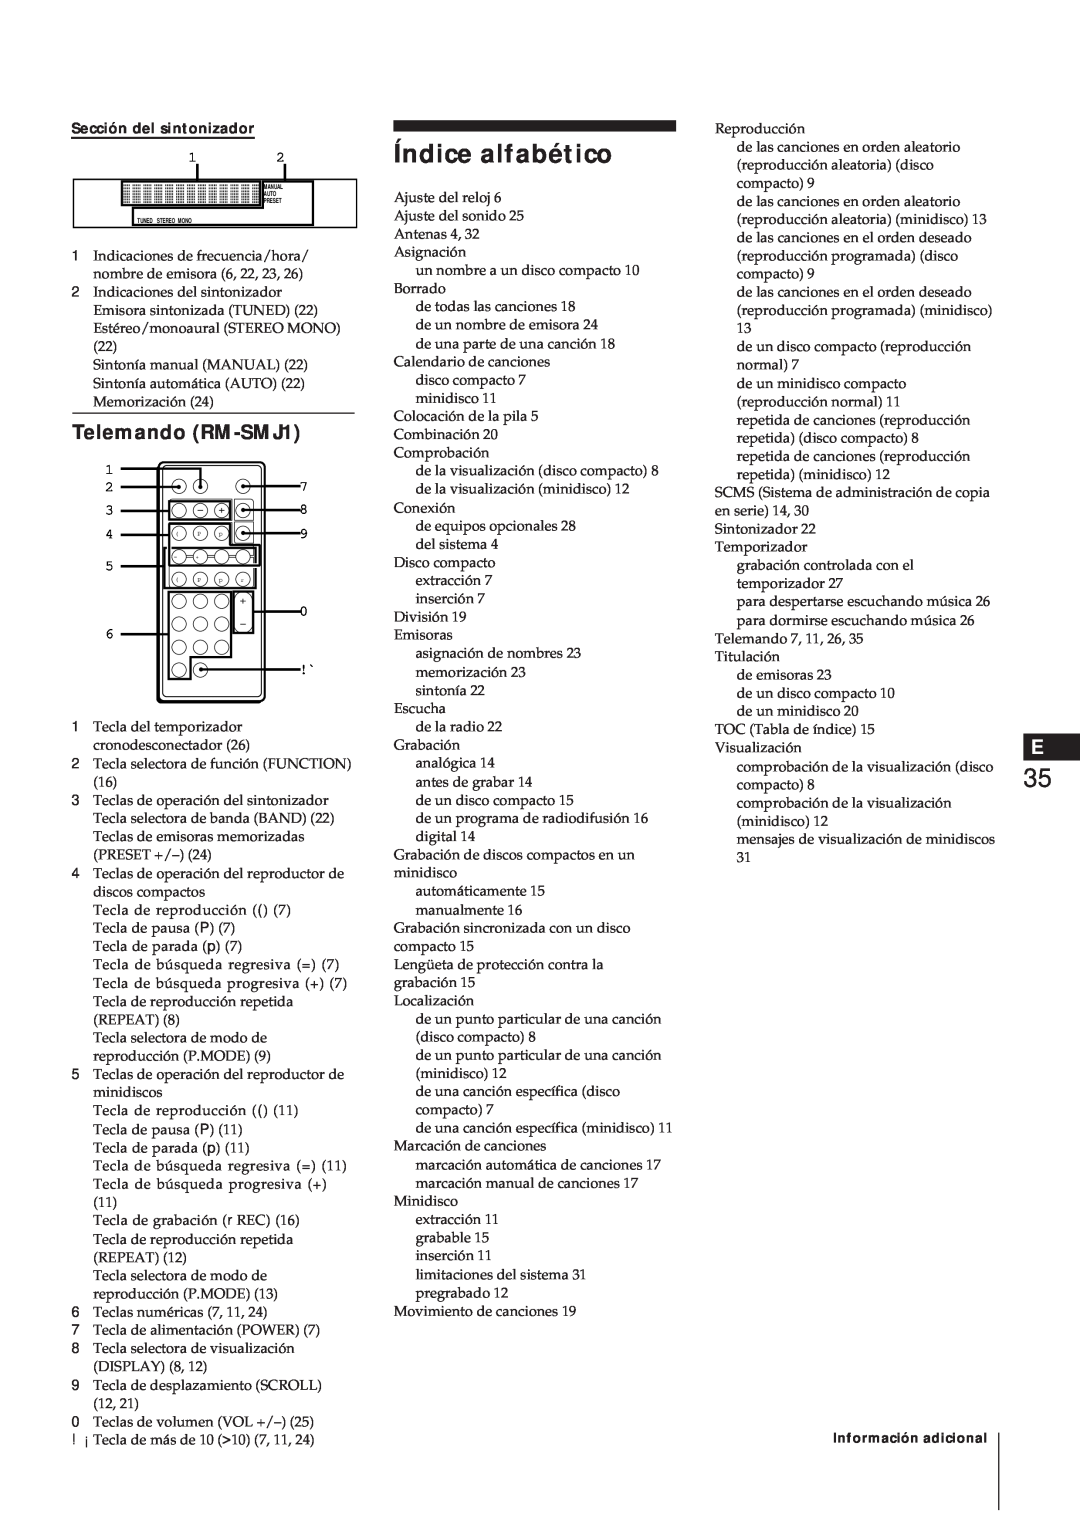 Sony MJ-L1A manual Índice alfabético, Telemando RM-SMJ1, Sección del sintonizador 